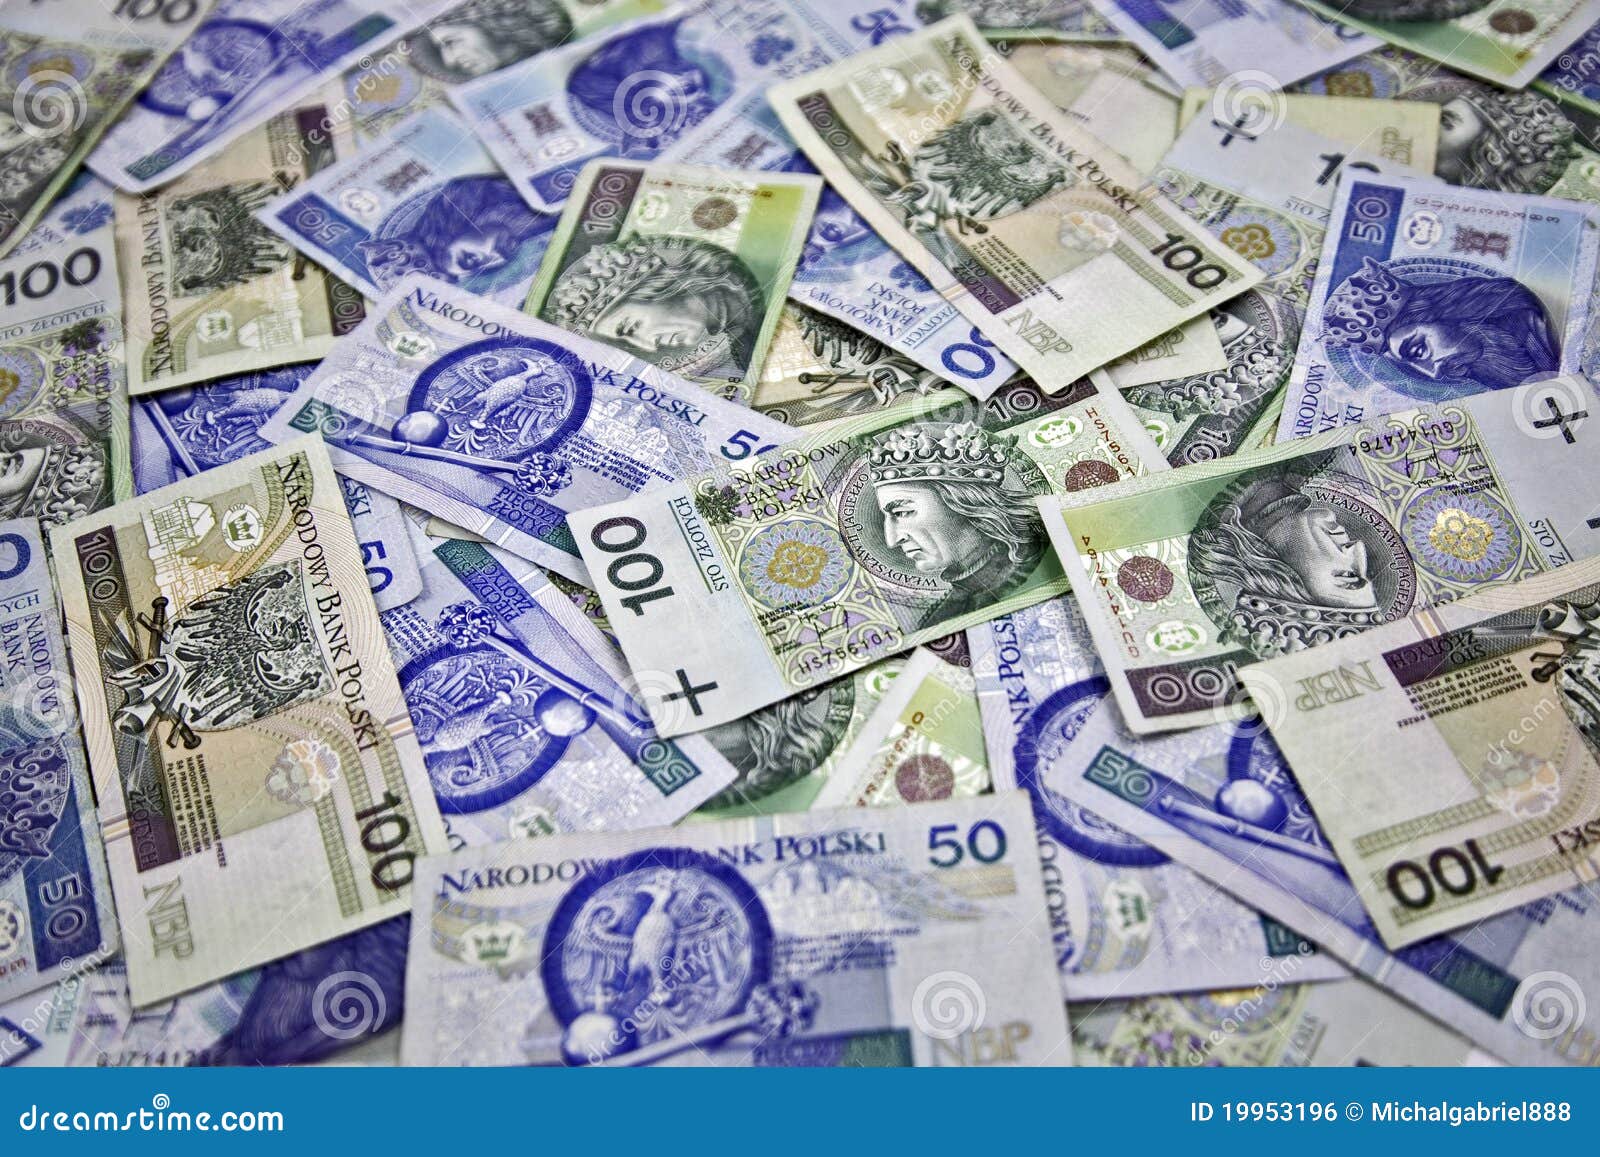 波兰货币钞票 库存照片. 图片 包括有 特写镜头, 班卓琵琶, 替换, 市场, 负债, 绿色, 广告牌, 投资 - 27002078